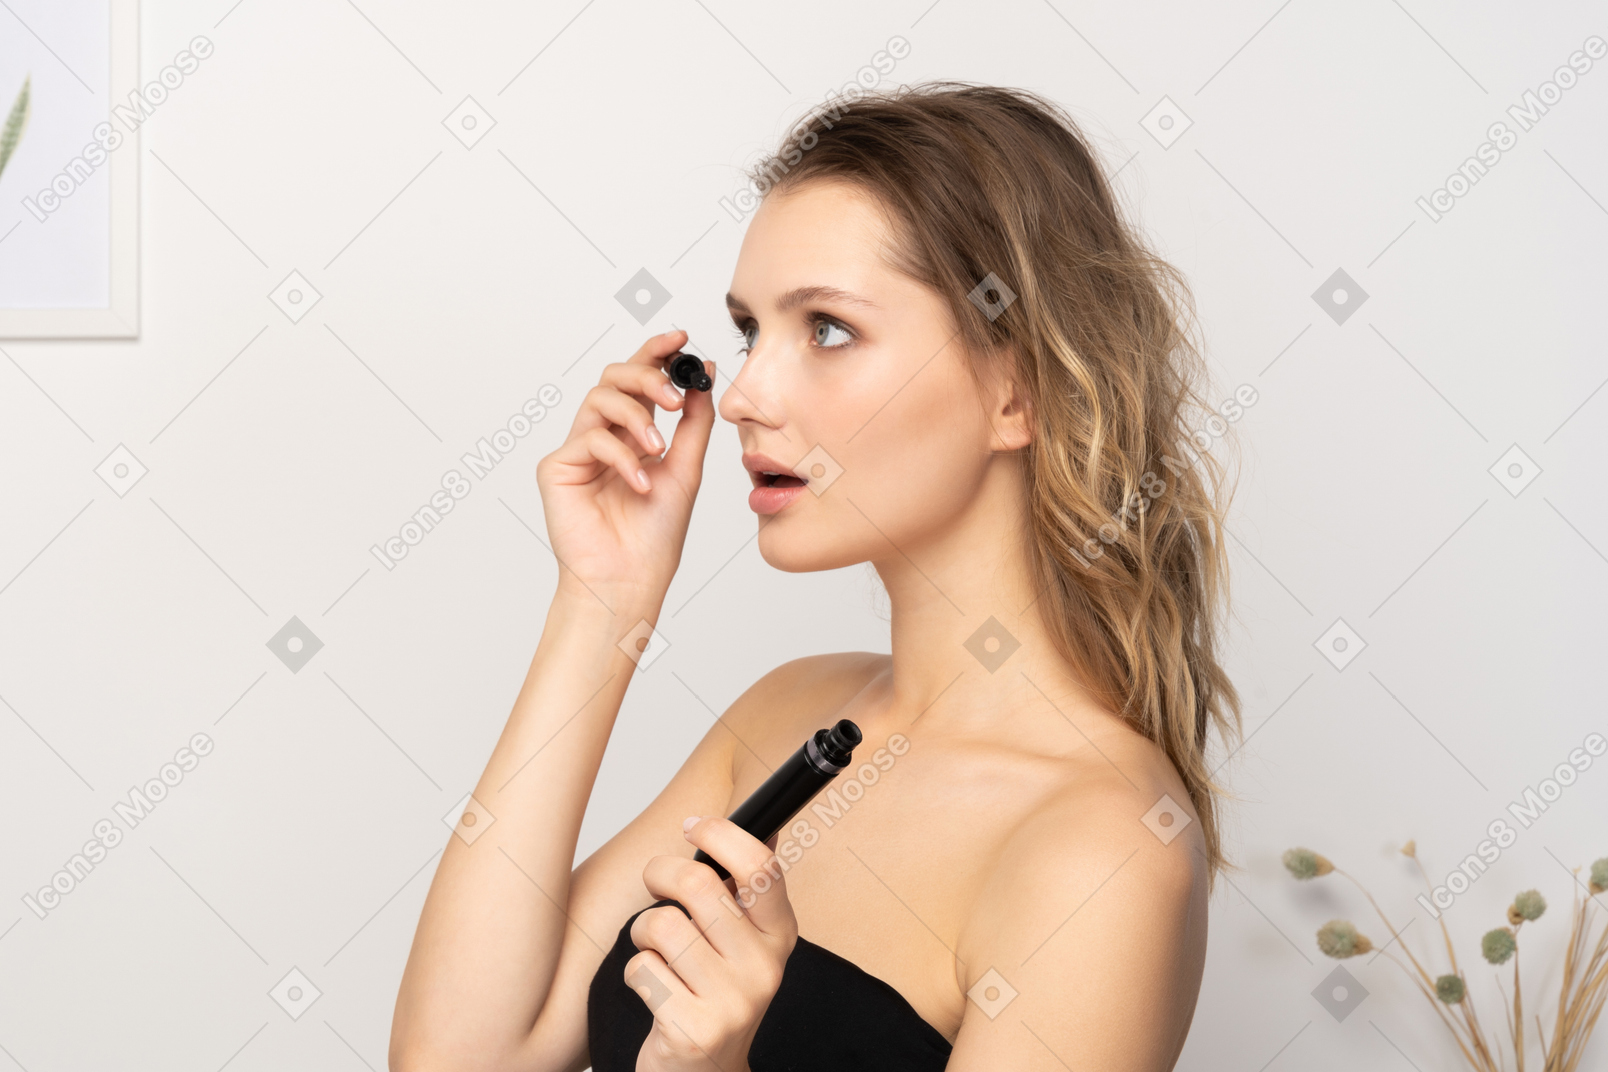 Vista de tres cuartos de una joven sorprendida vistiendo top negro aplicando rímel